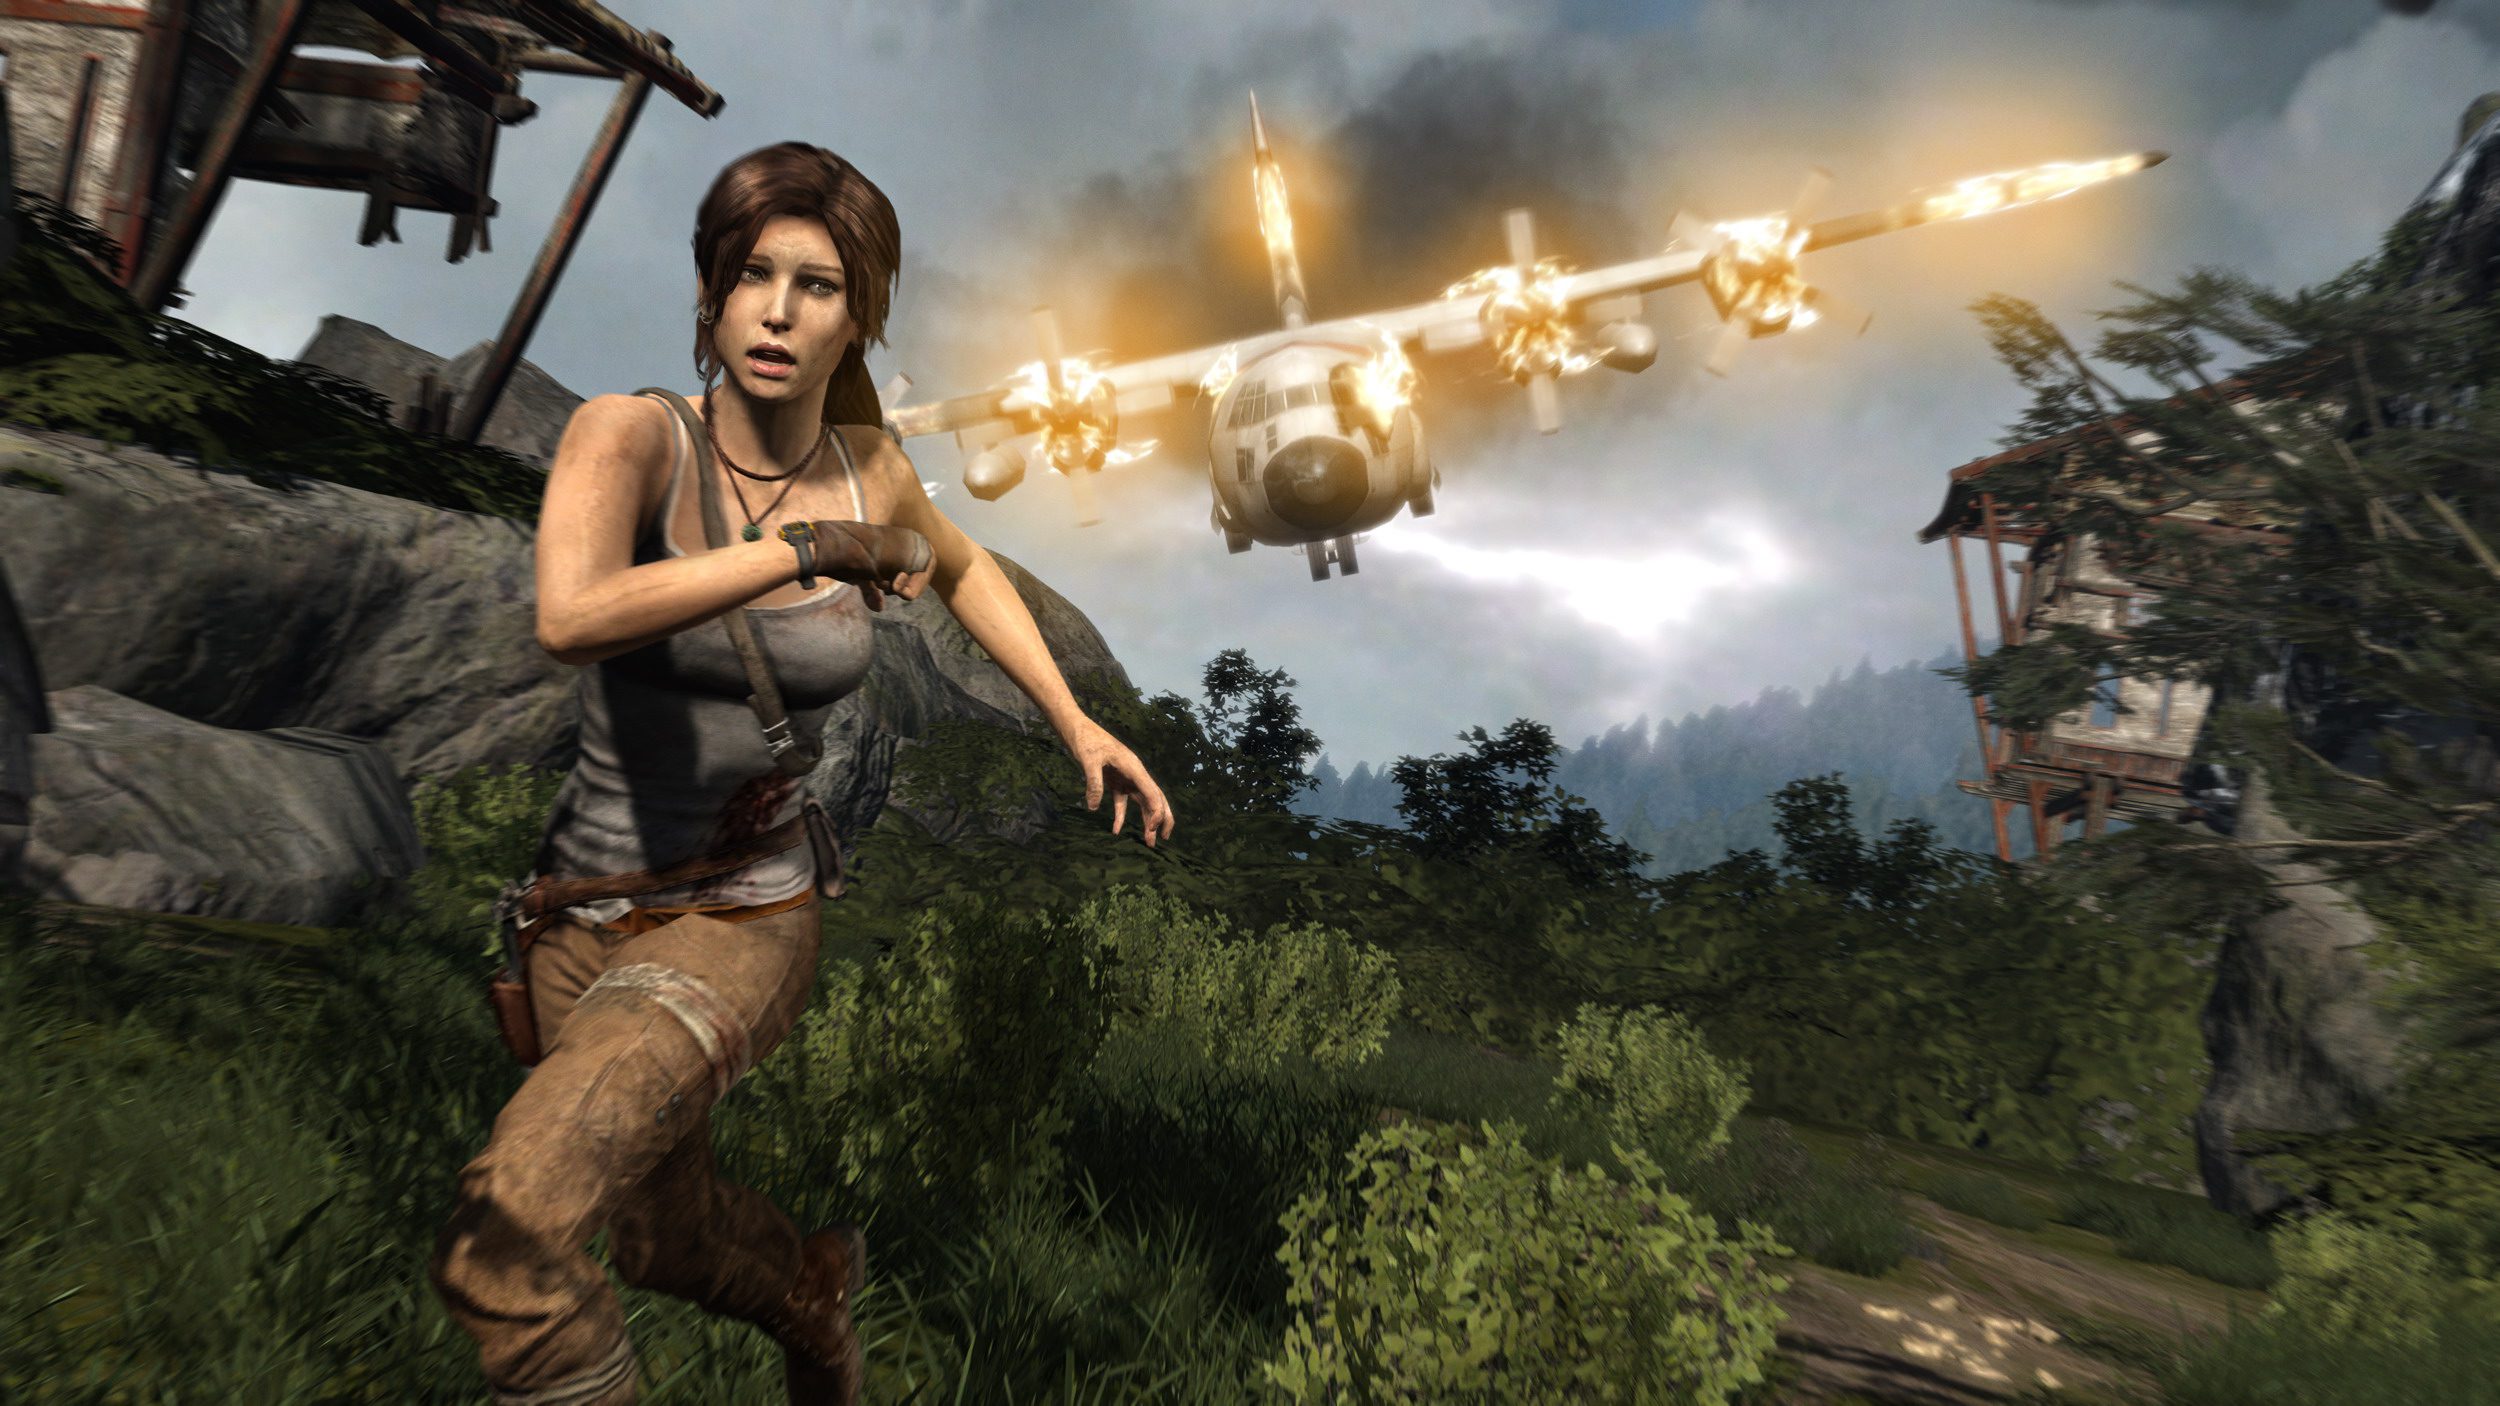 Tomb Raider (2013) Ending Explained: Lara Saves The Day Again - OtakuKart